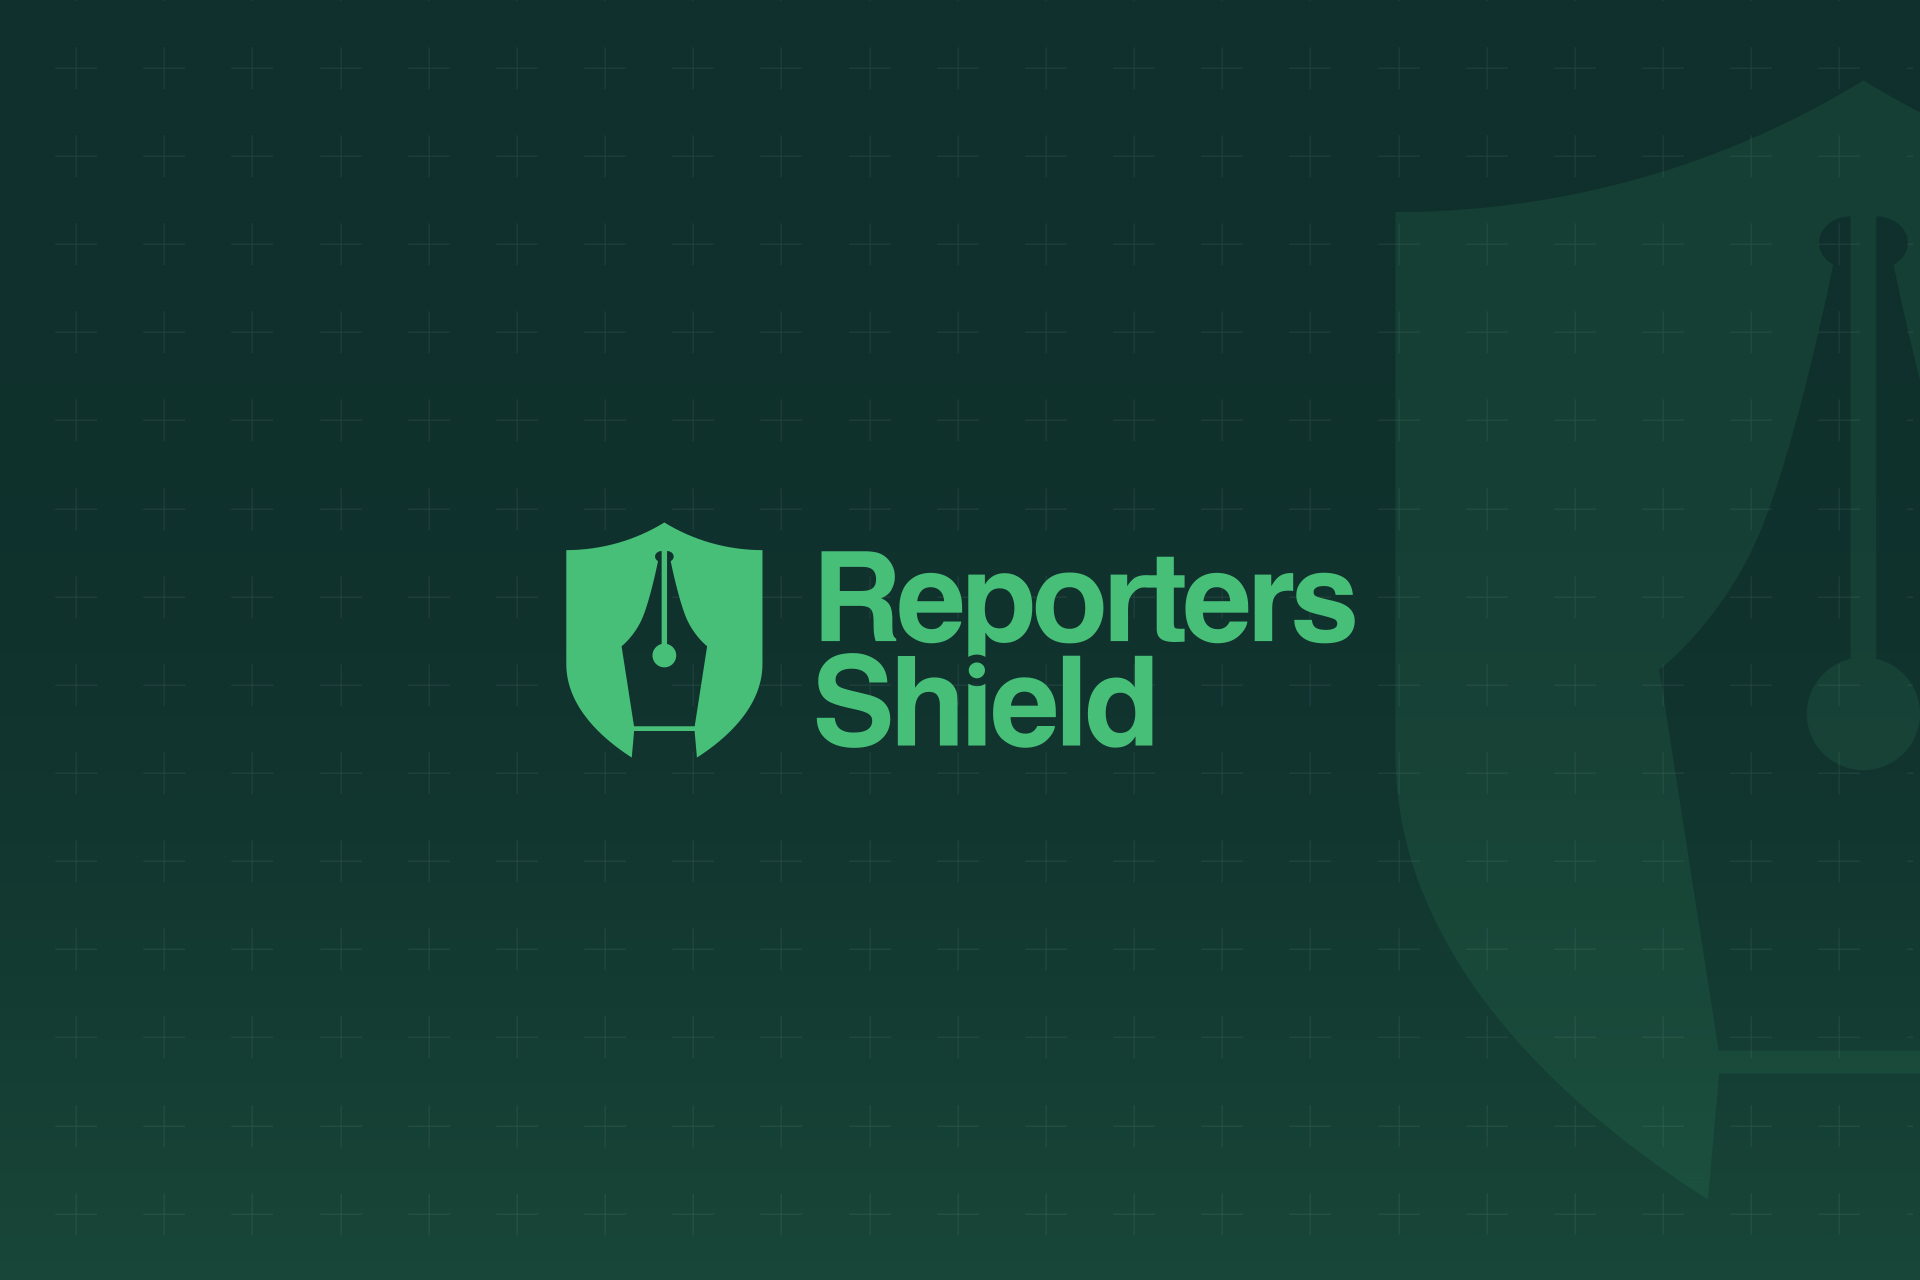 Во Всемирный день свободы печати мы запускаем программу Reporters Shield, нацеленную на защиту репортеров